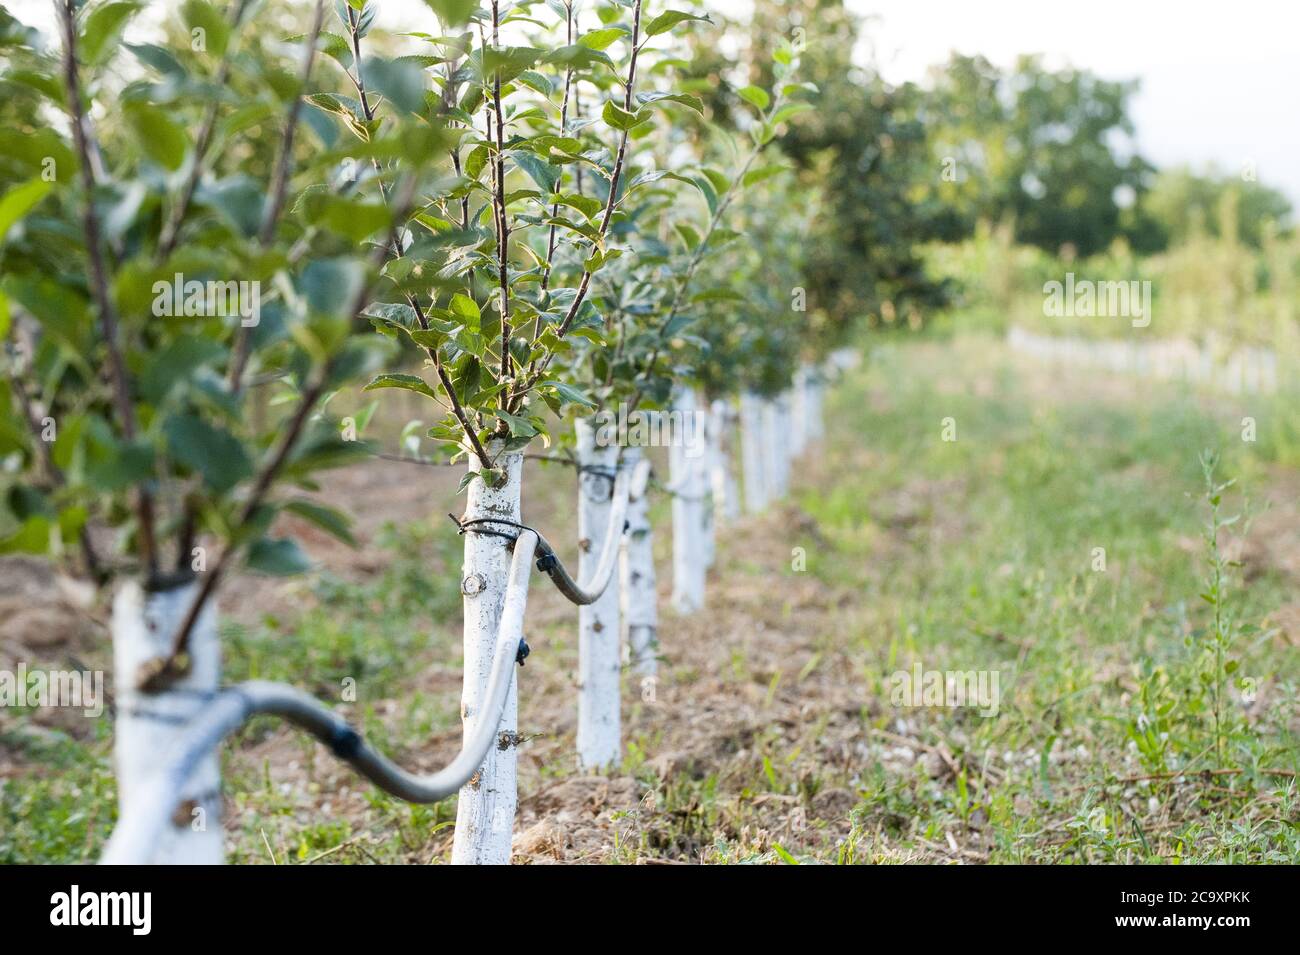 Frutteto di mele con alberi innestati protetti con la miscela bordeaux. Foto Stock